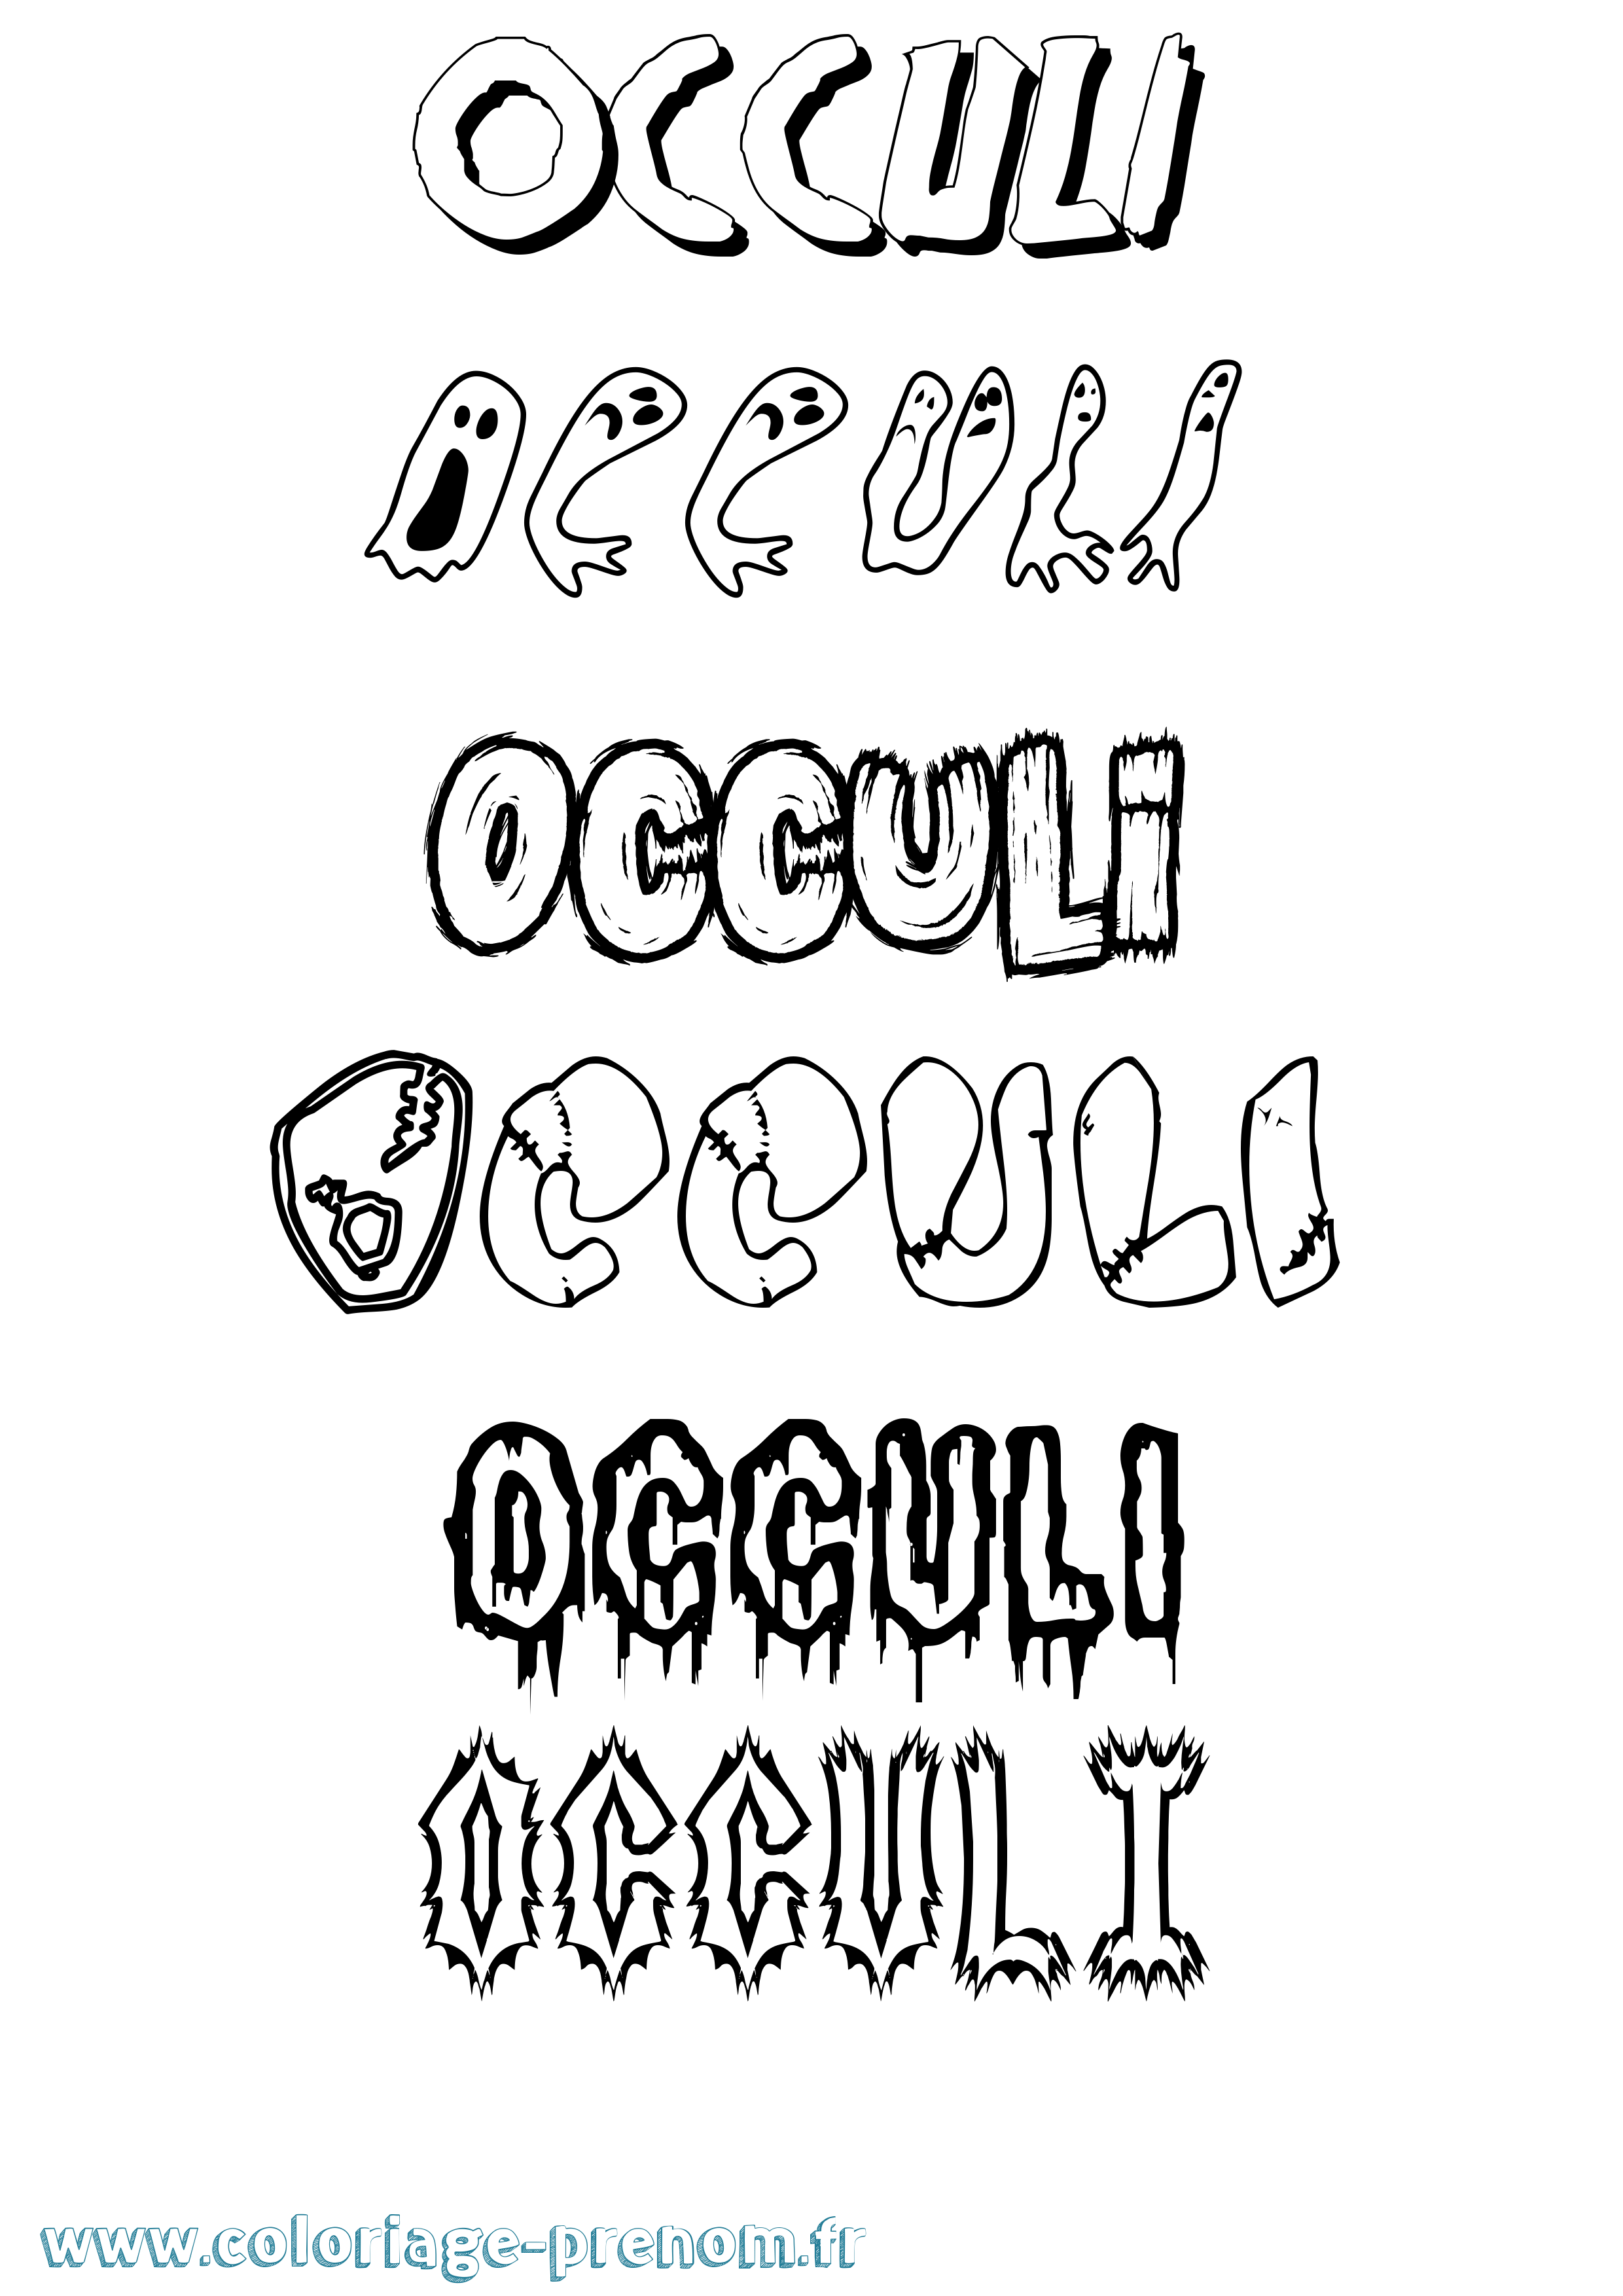 Coloriage prénom Occuli Frisson